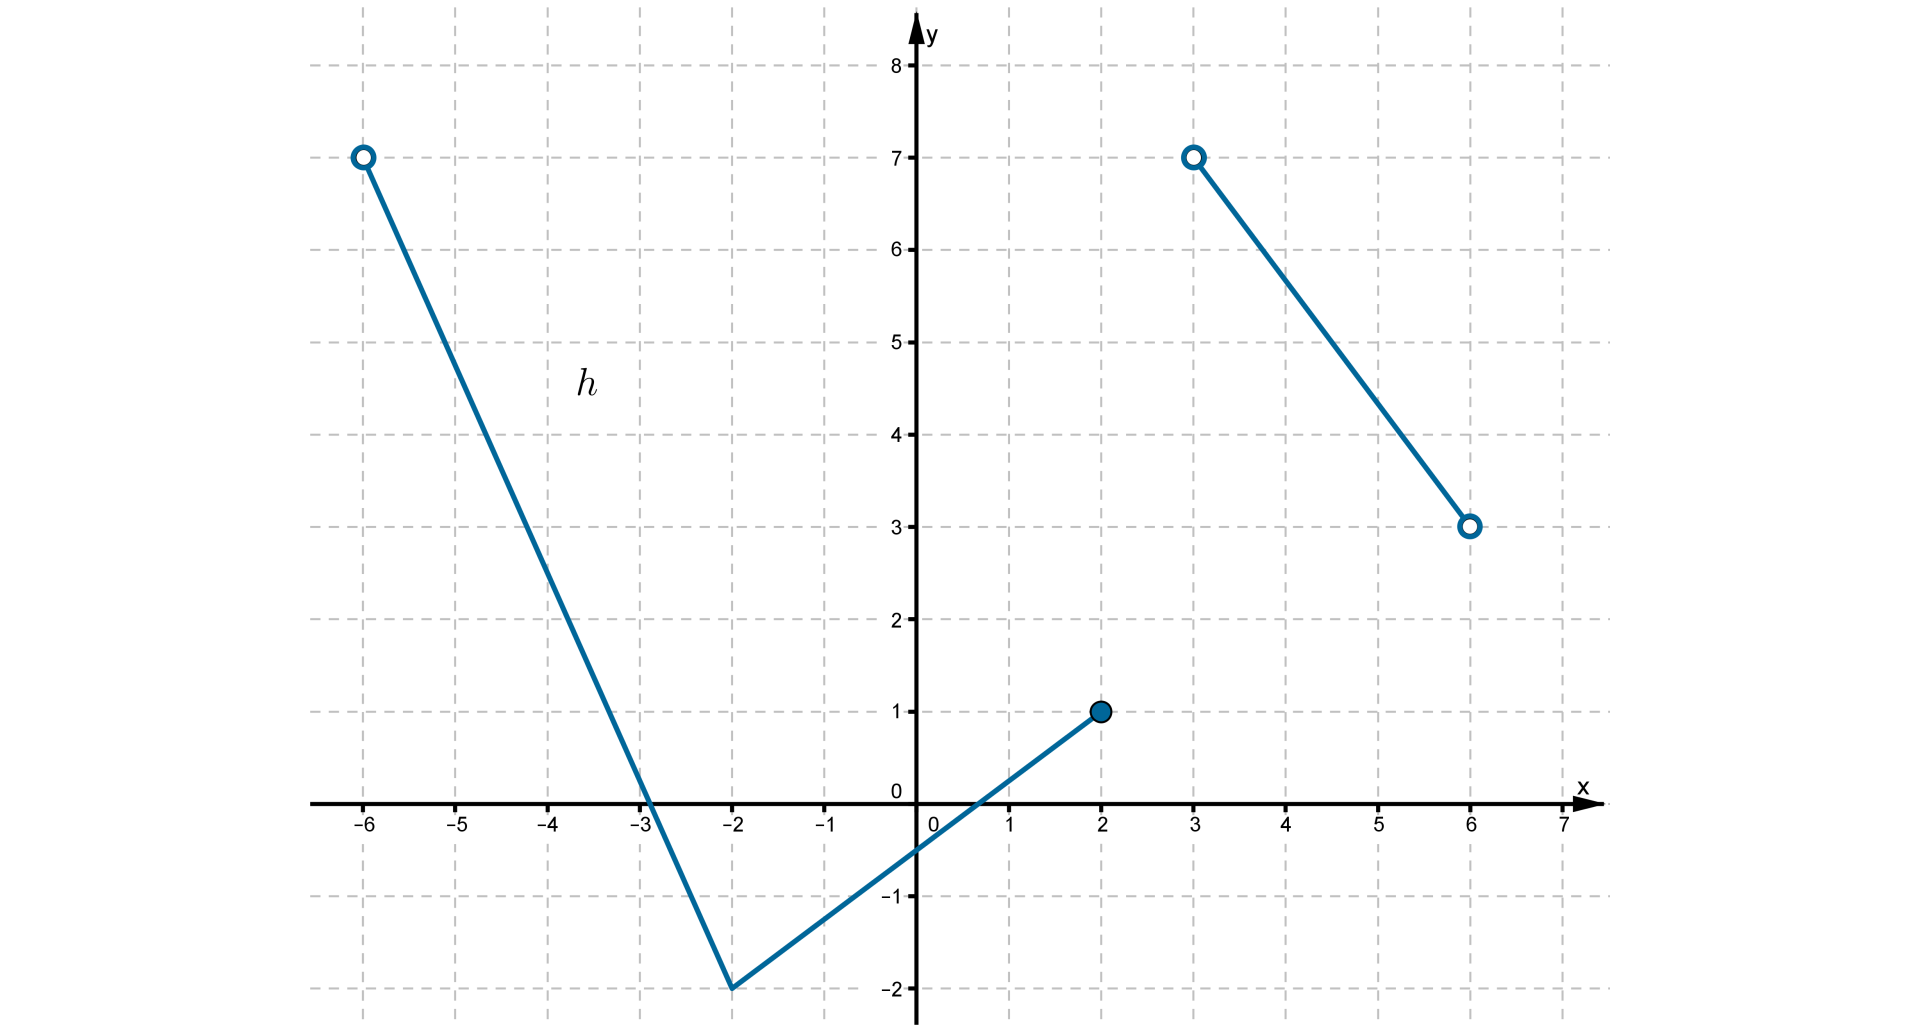 Ilustracja przedstawia układ współrzędnych z poziomą osią X od minus sześciu do siedmiu oraz z pionową osią Y od minus dwóch do ośmiu. Na płaszczyźnie narysowano wykres funkcji składający się z łamanej i jednego odcinka. Łamana składa się z połączonych ze sobą odcinków o końcach w następujących punktach kolejno od lewej: -6;7, -2;-2 i 2;1. Łamana jest ograniczona prawostronnie niezamalowanym punktem oraz prawostronnie zamalowanym punktem. Odcinek ma końce w niezamalowanych punktach o współrzędnych 3;7 i 6;3.    